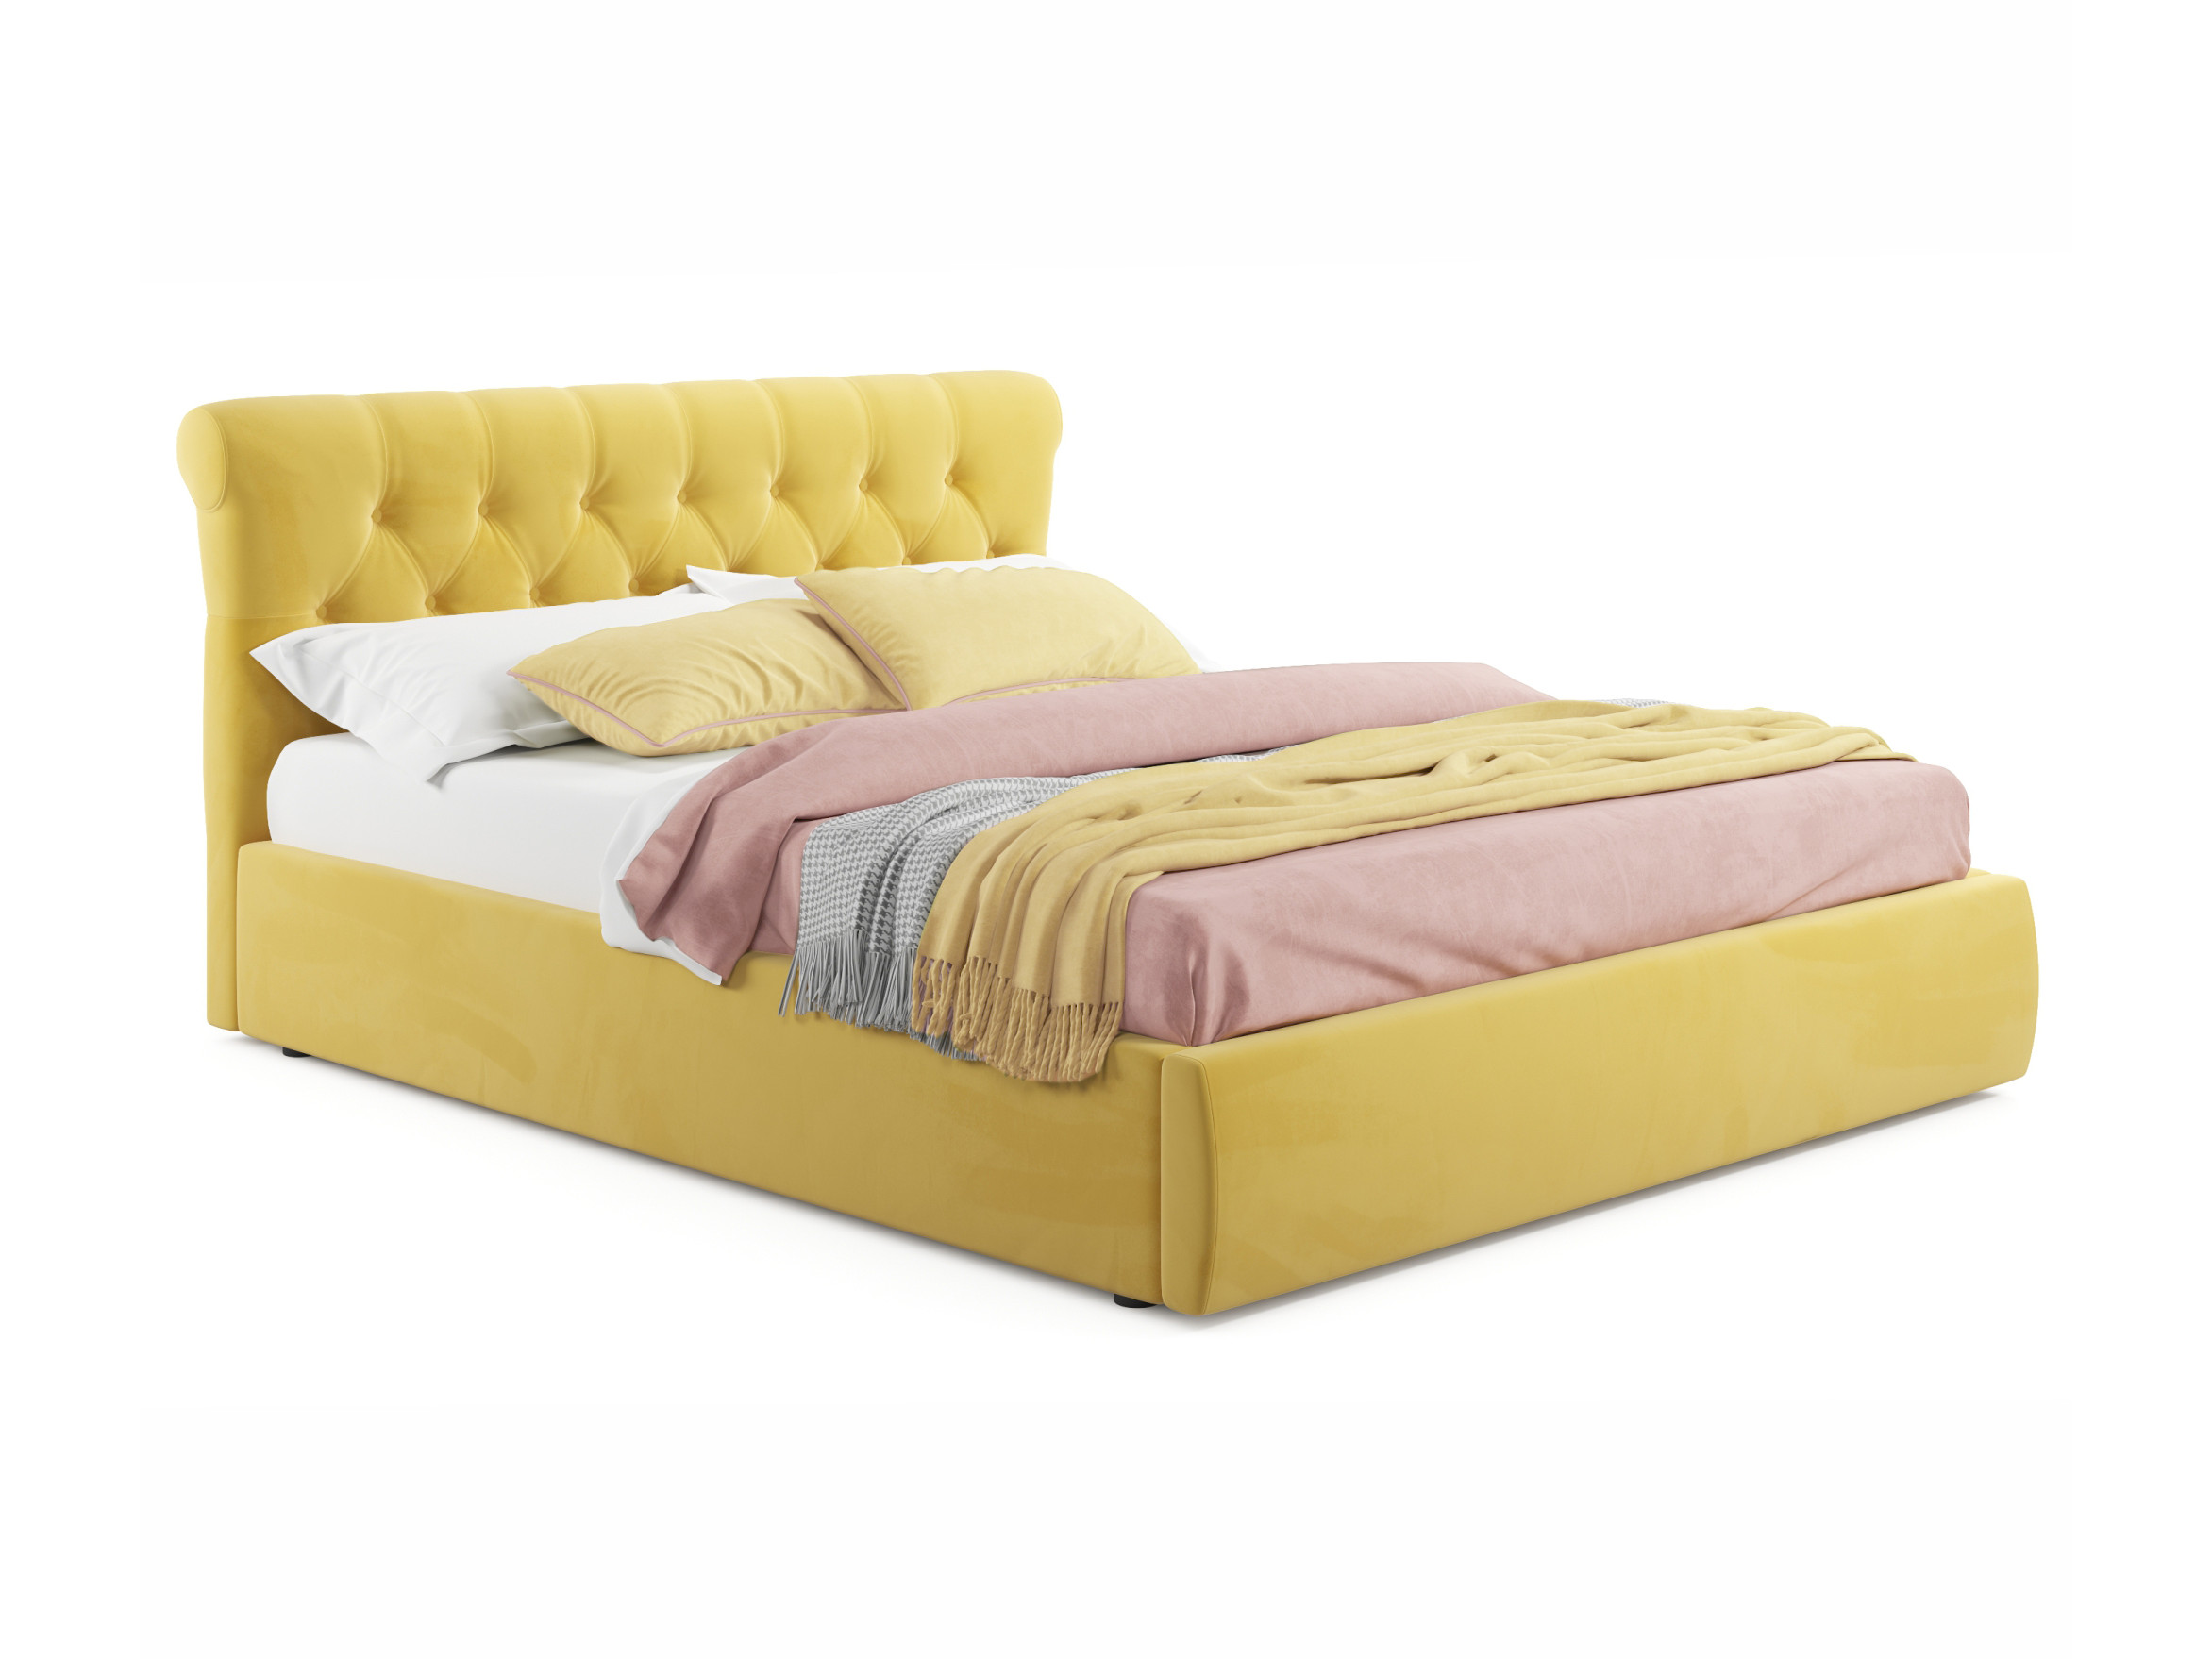 Мягкая кровать Ameli 1600 желтая с подъемным механизмом желтый, Желтый, Велюр, ДСП мягкая кровать с тумбами ameli 1600 синяя с подъемным механизмом синий синий велюр дсп